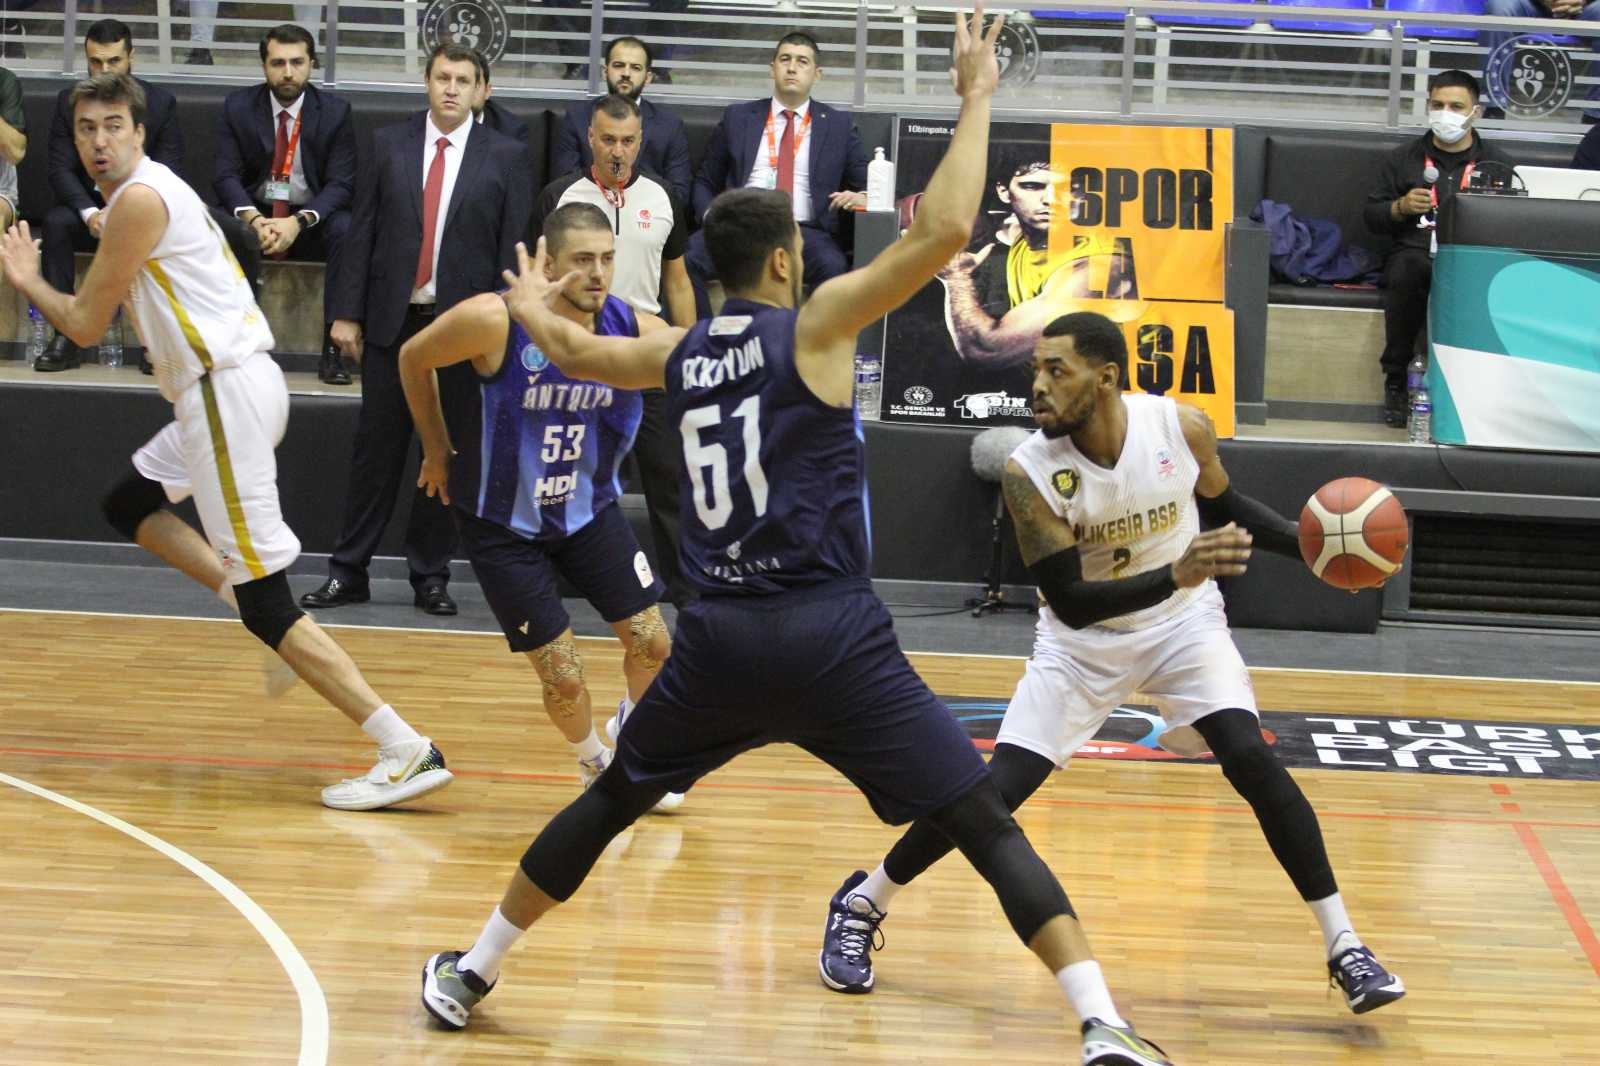 Türkiye Basketbol Ligi: Balıkesir Büyükşehir Belediyespor: 63 - Antalya Güneşi: 60 #balikesir